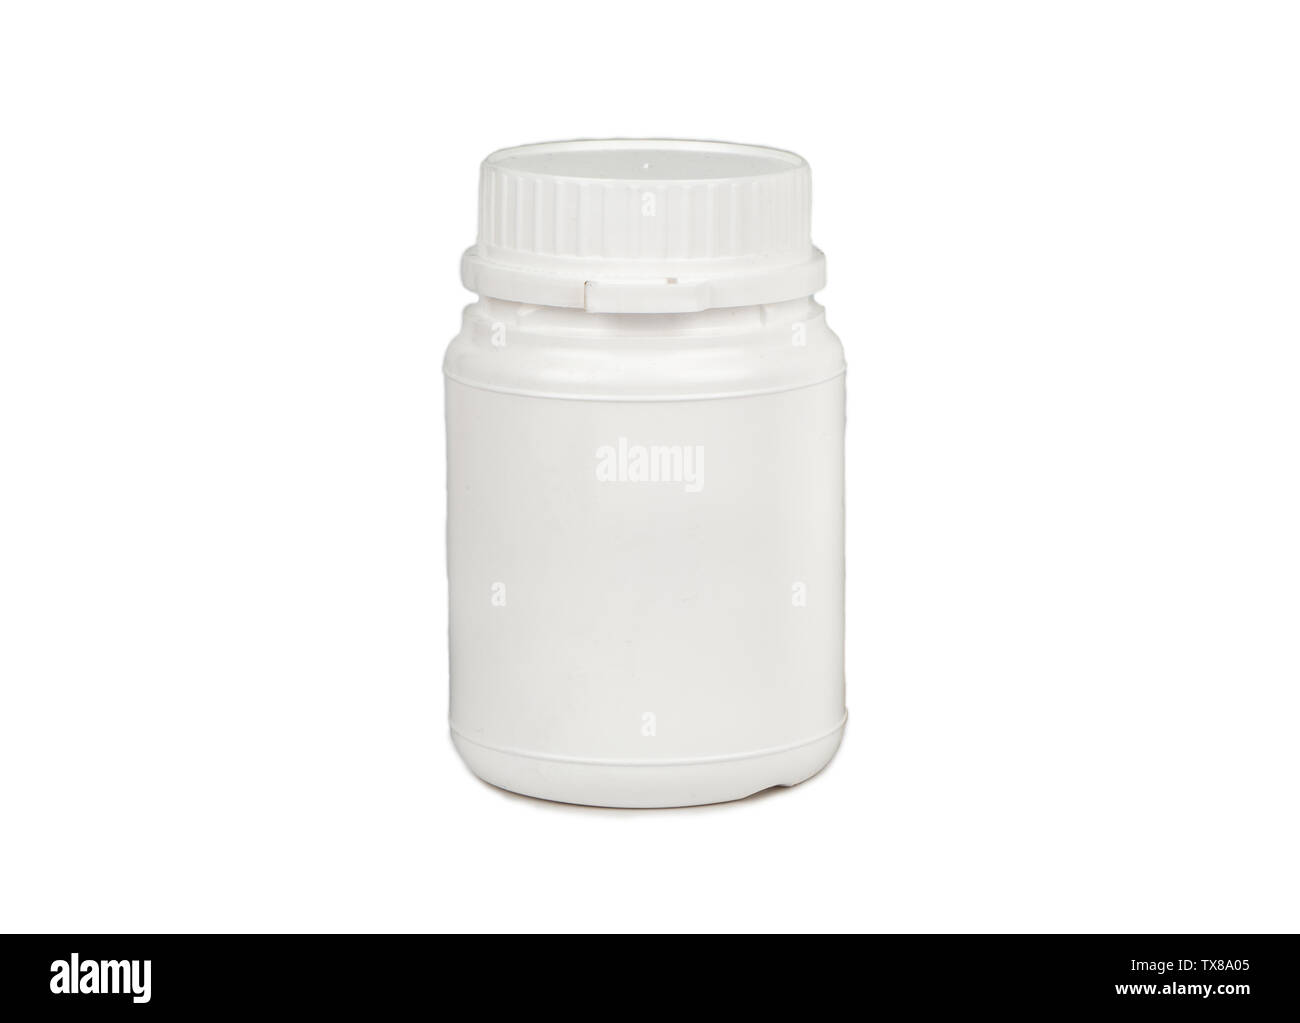 Luce vaso in plastica isolato su sfondo bianco Foto Stock